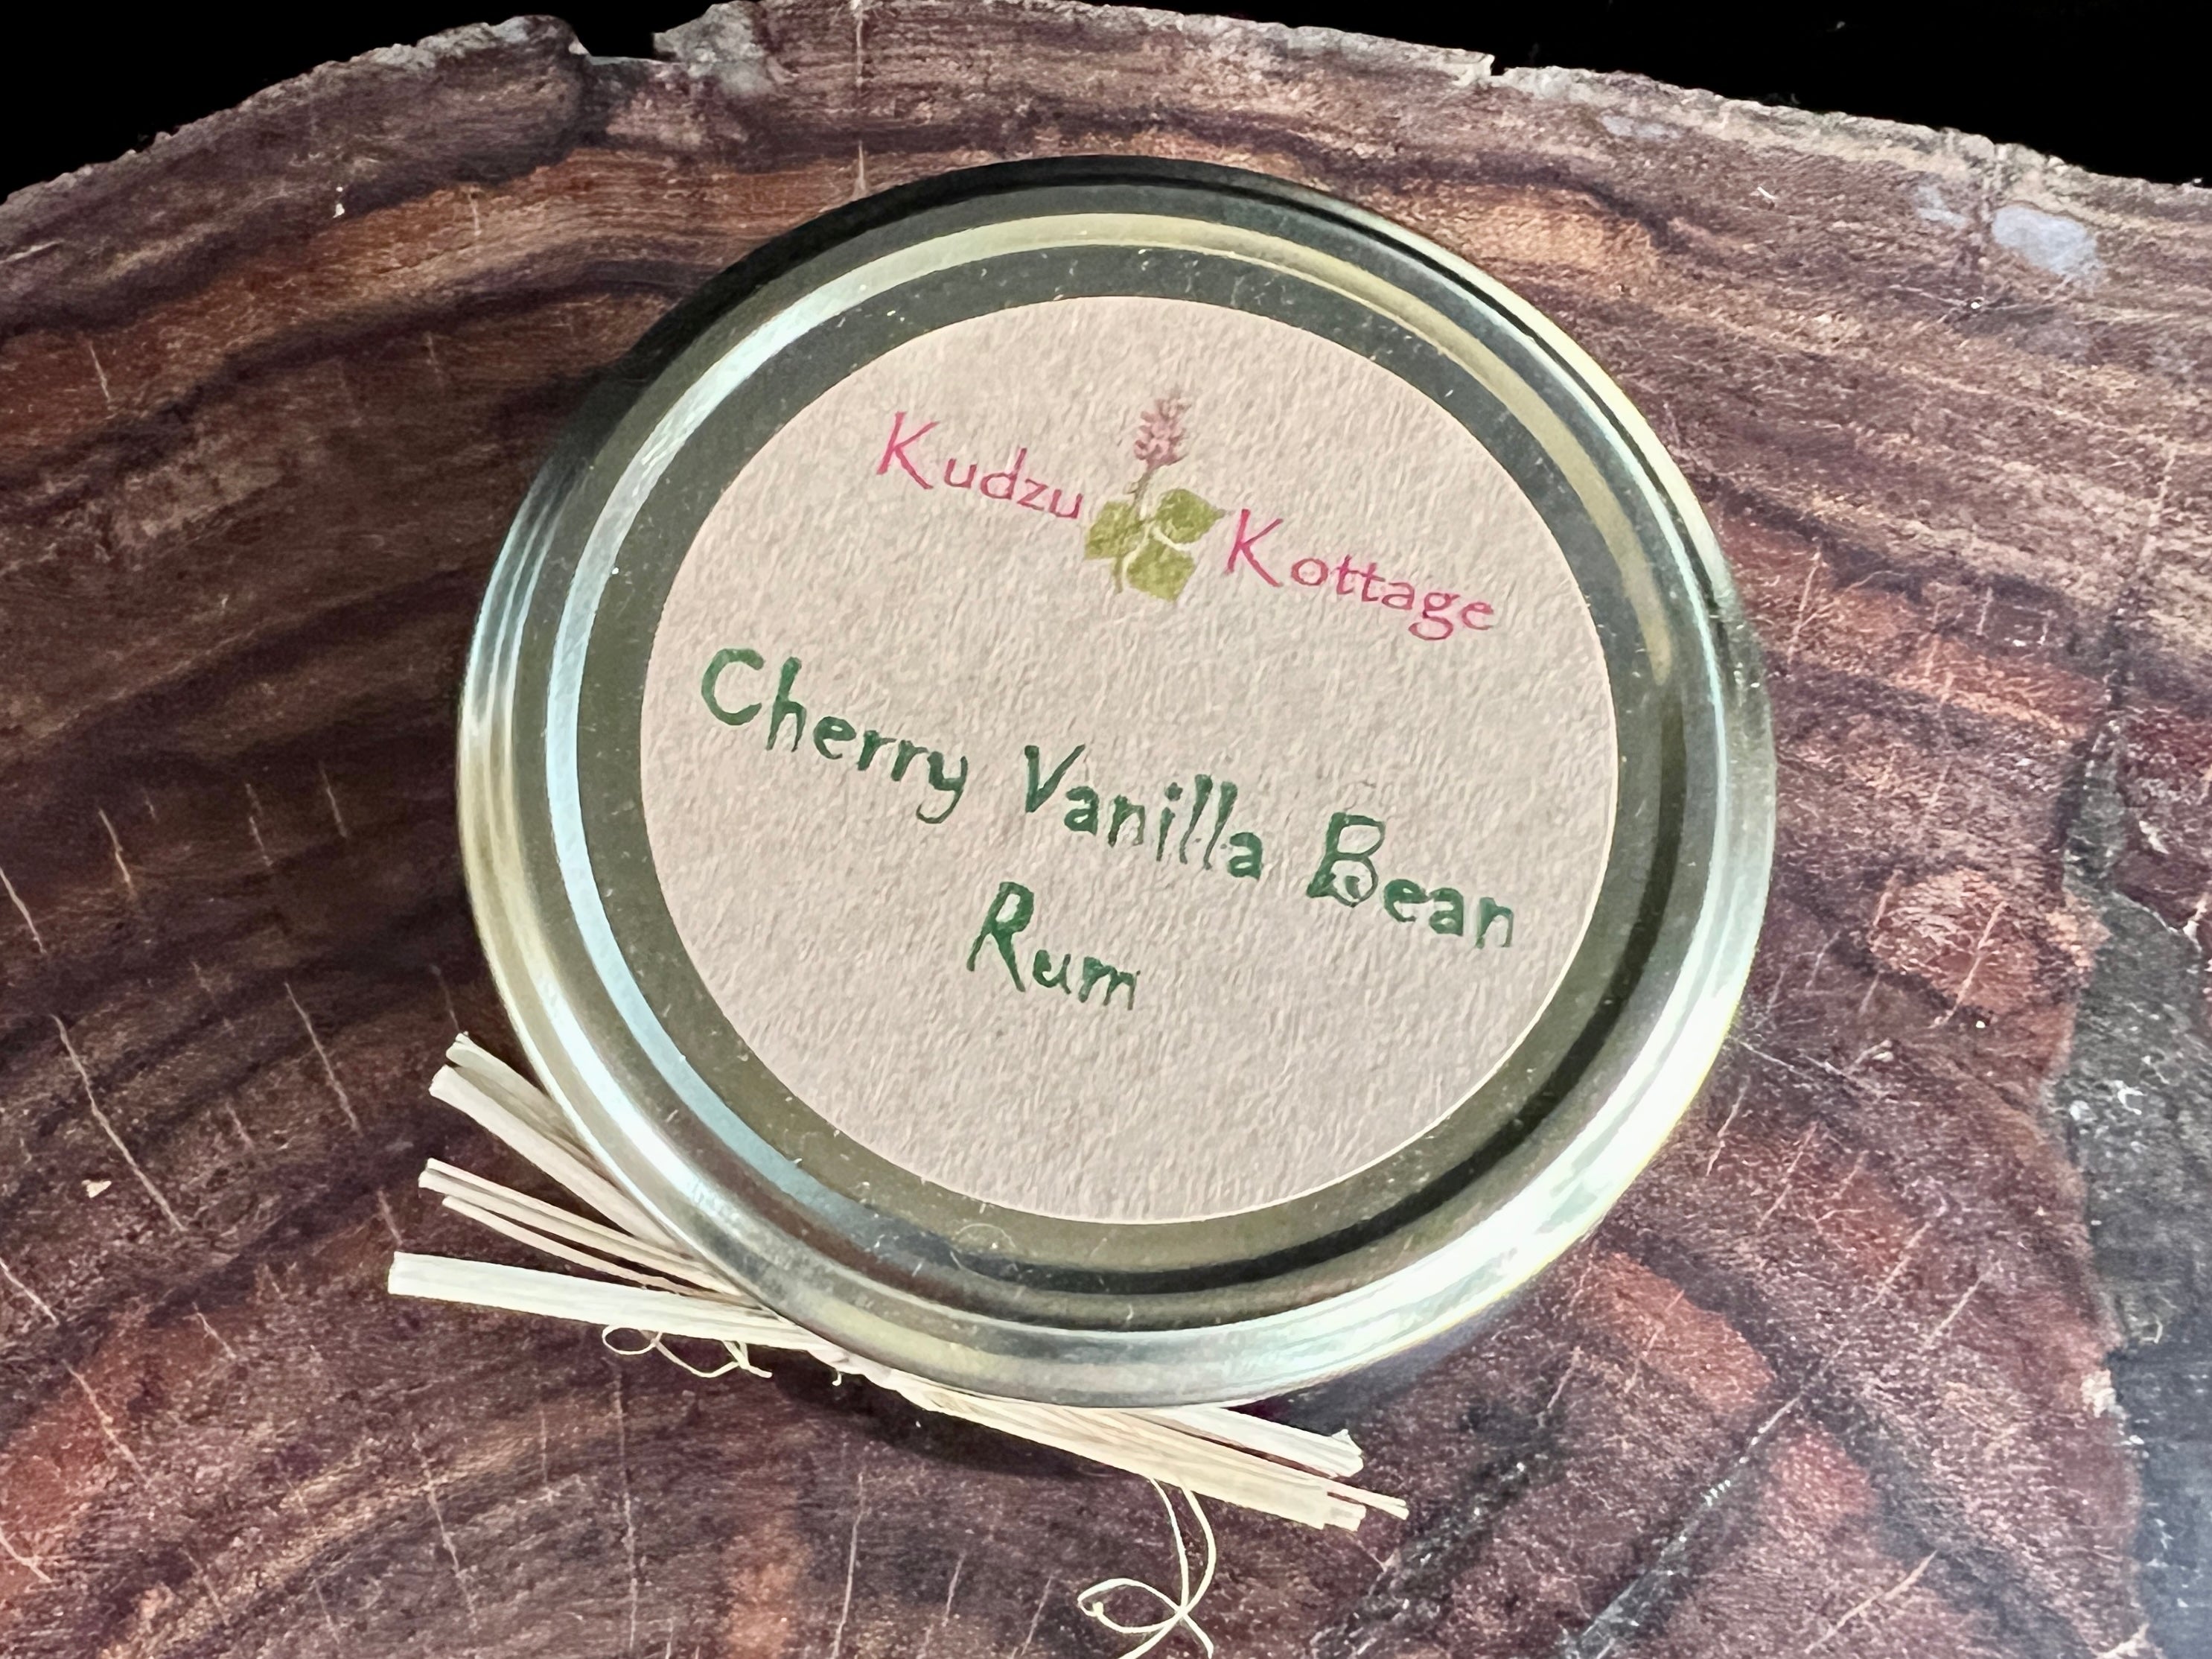 Cherry Vanilla Bean Rum